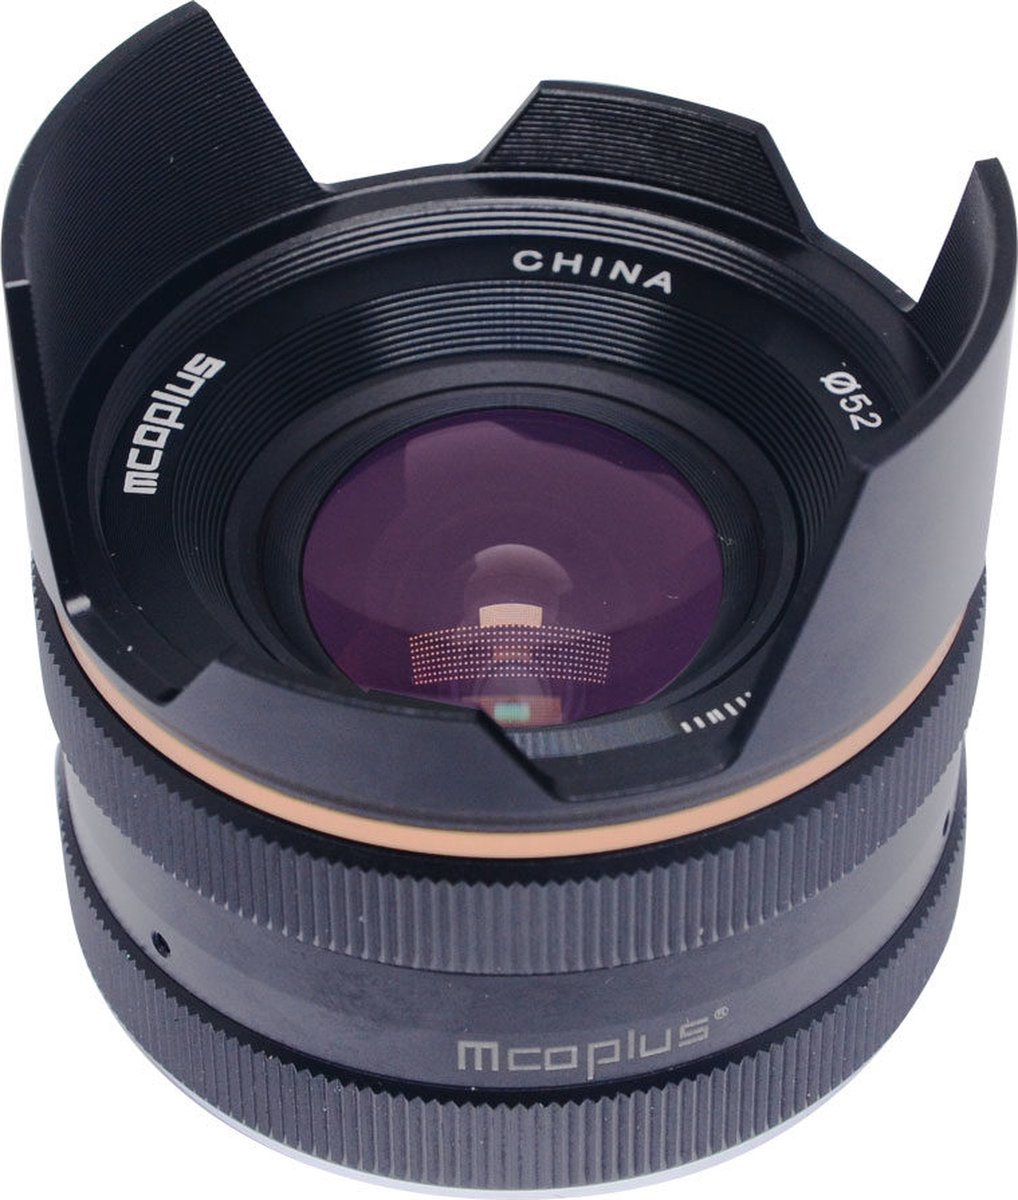 Mcoplus MCO14mm F/3.5 Zwart voor Sony E-Mount